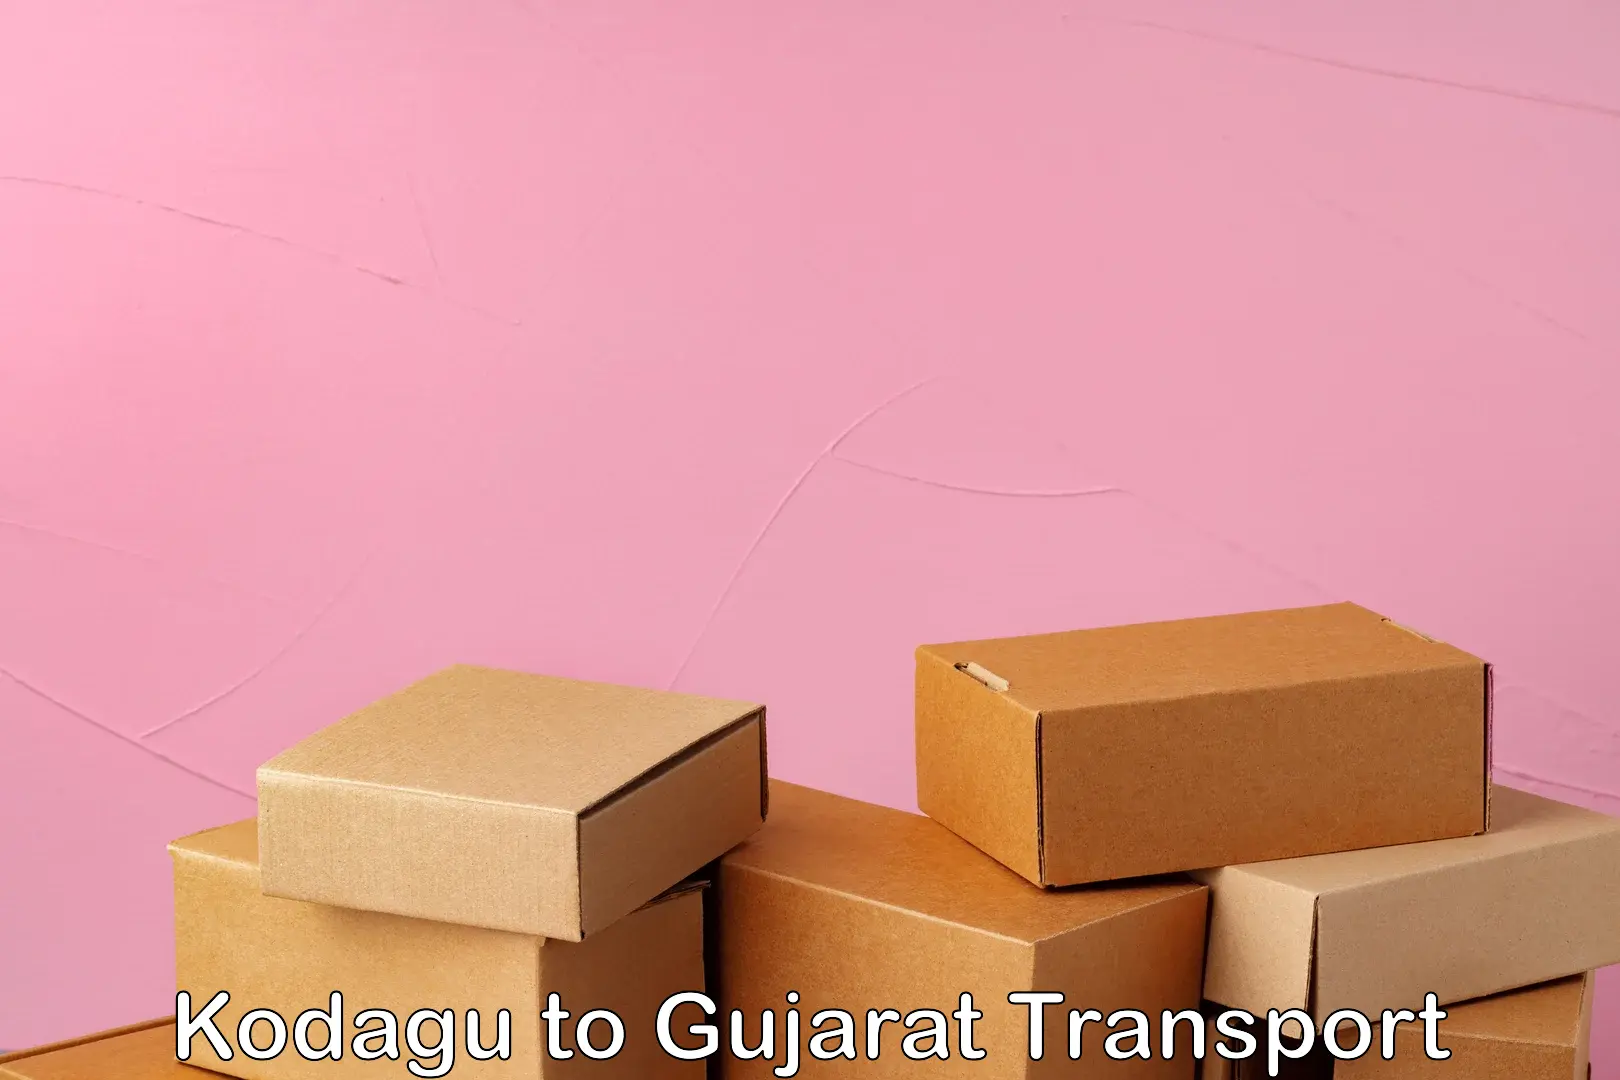 Shipping partner Kodagu to Gujarat